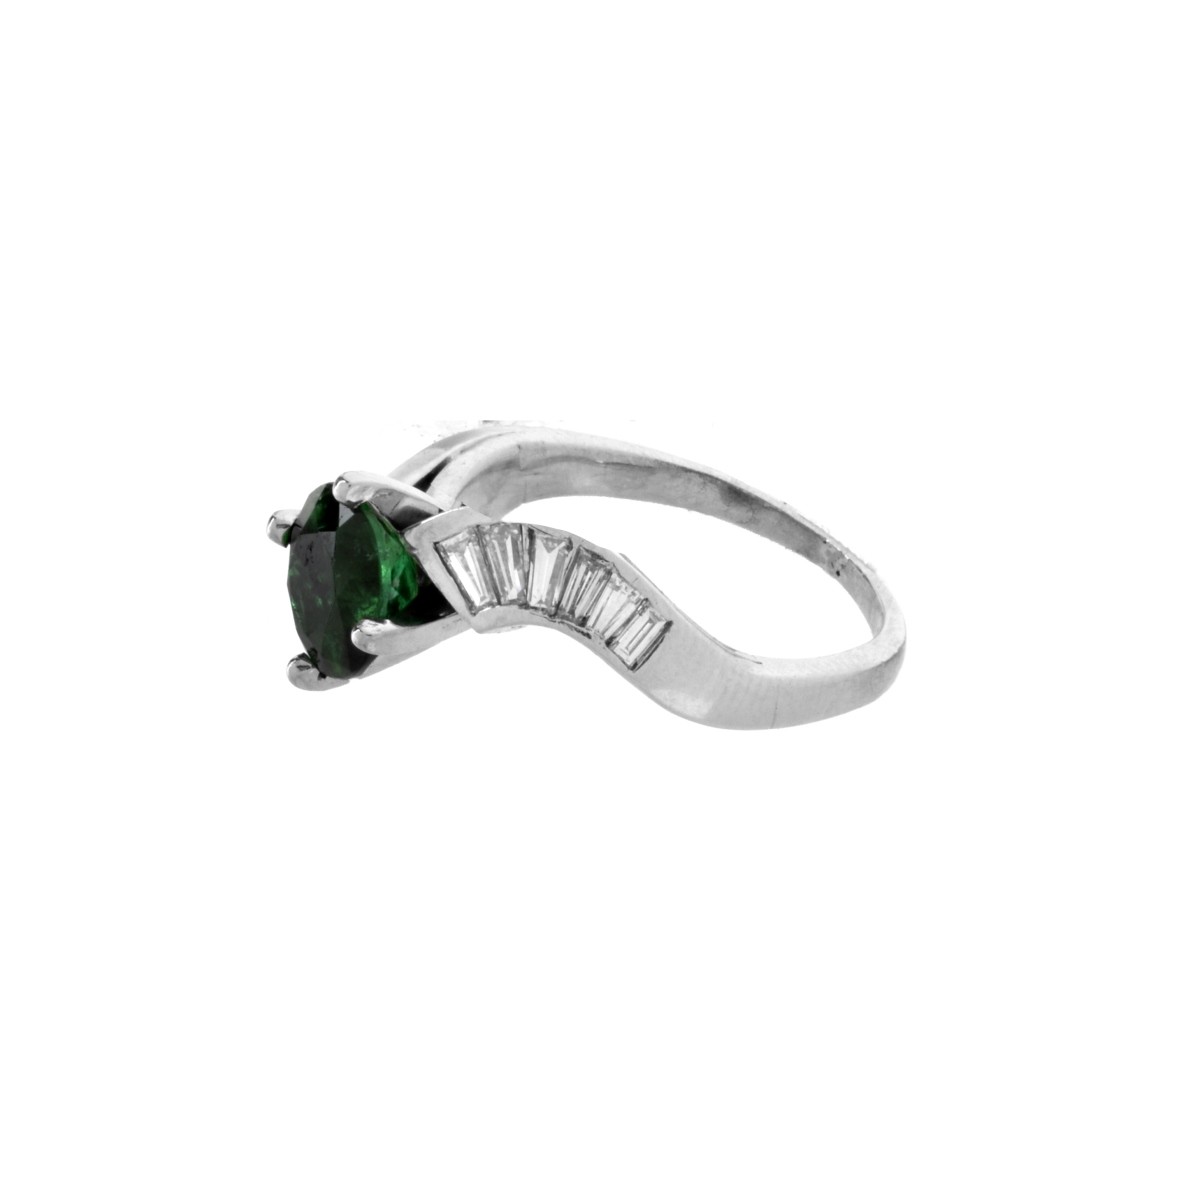 Deco Emerald, Diamond and Platinum Ring